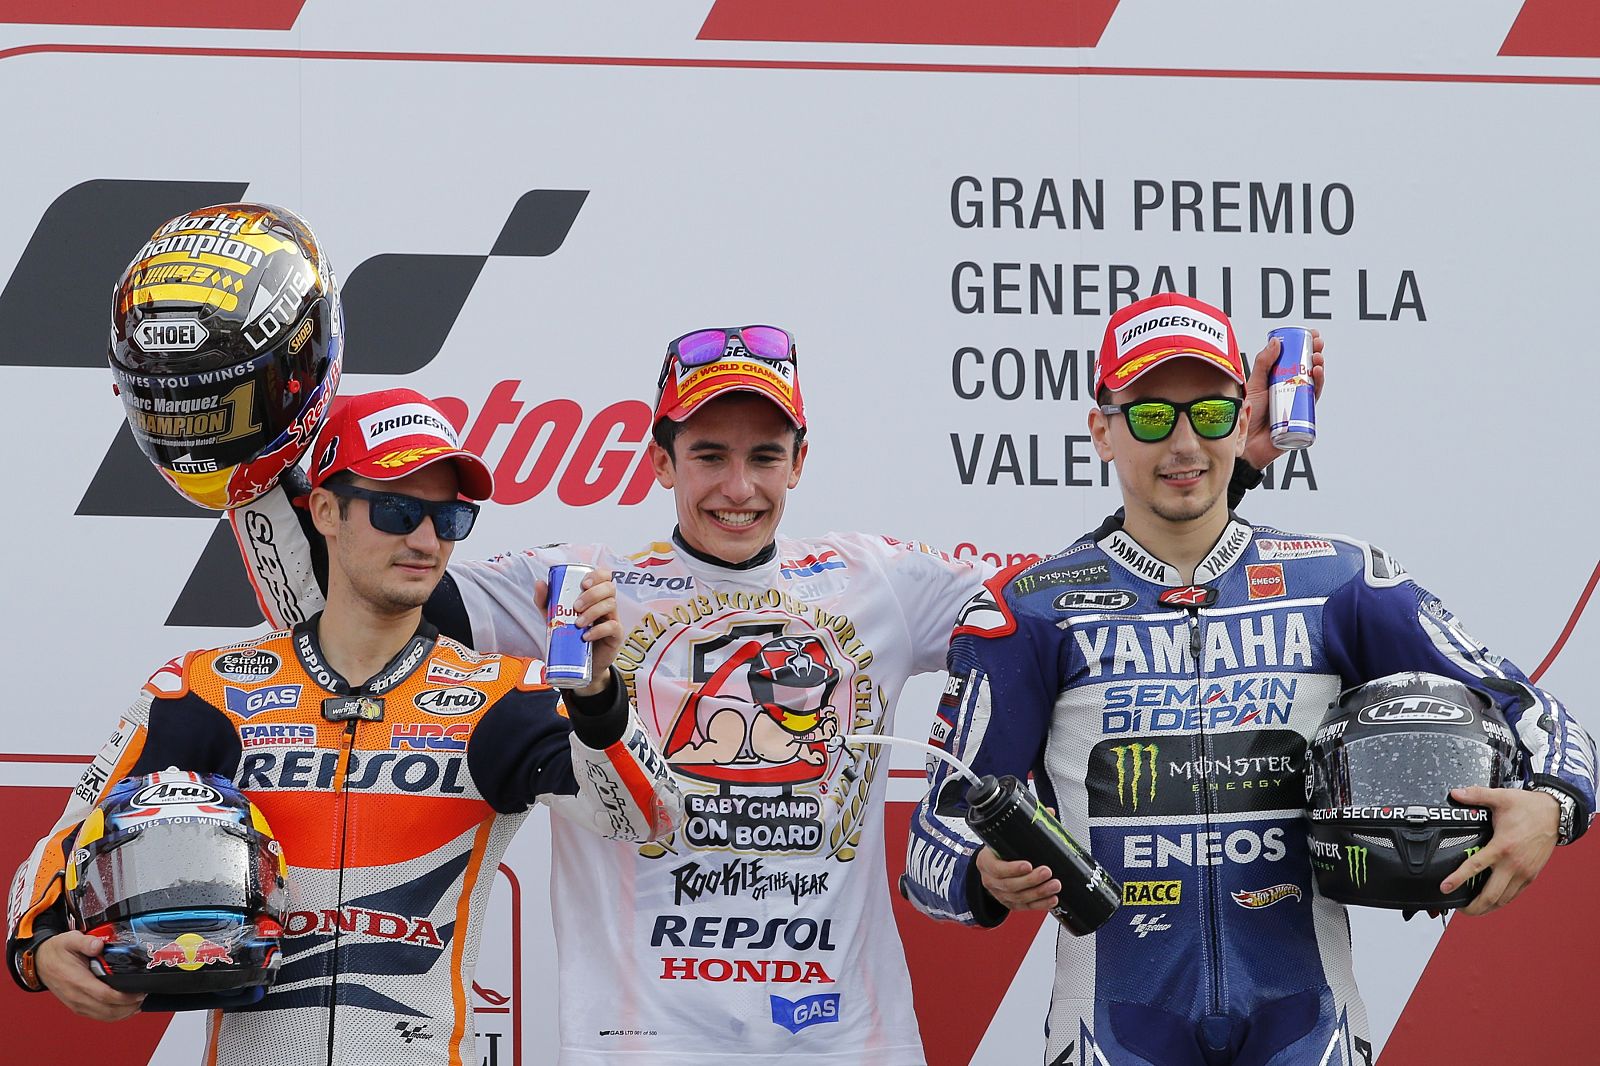 El podio de MotoGP en Cheste, con Márquez en el centro celebrando el Mundial